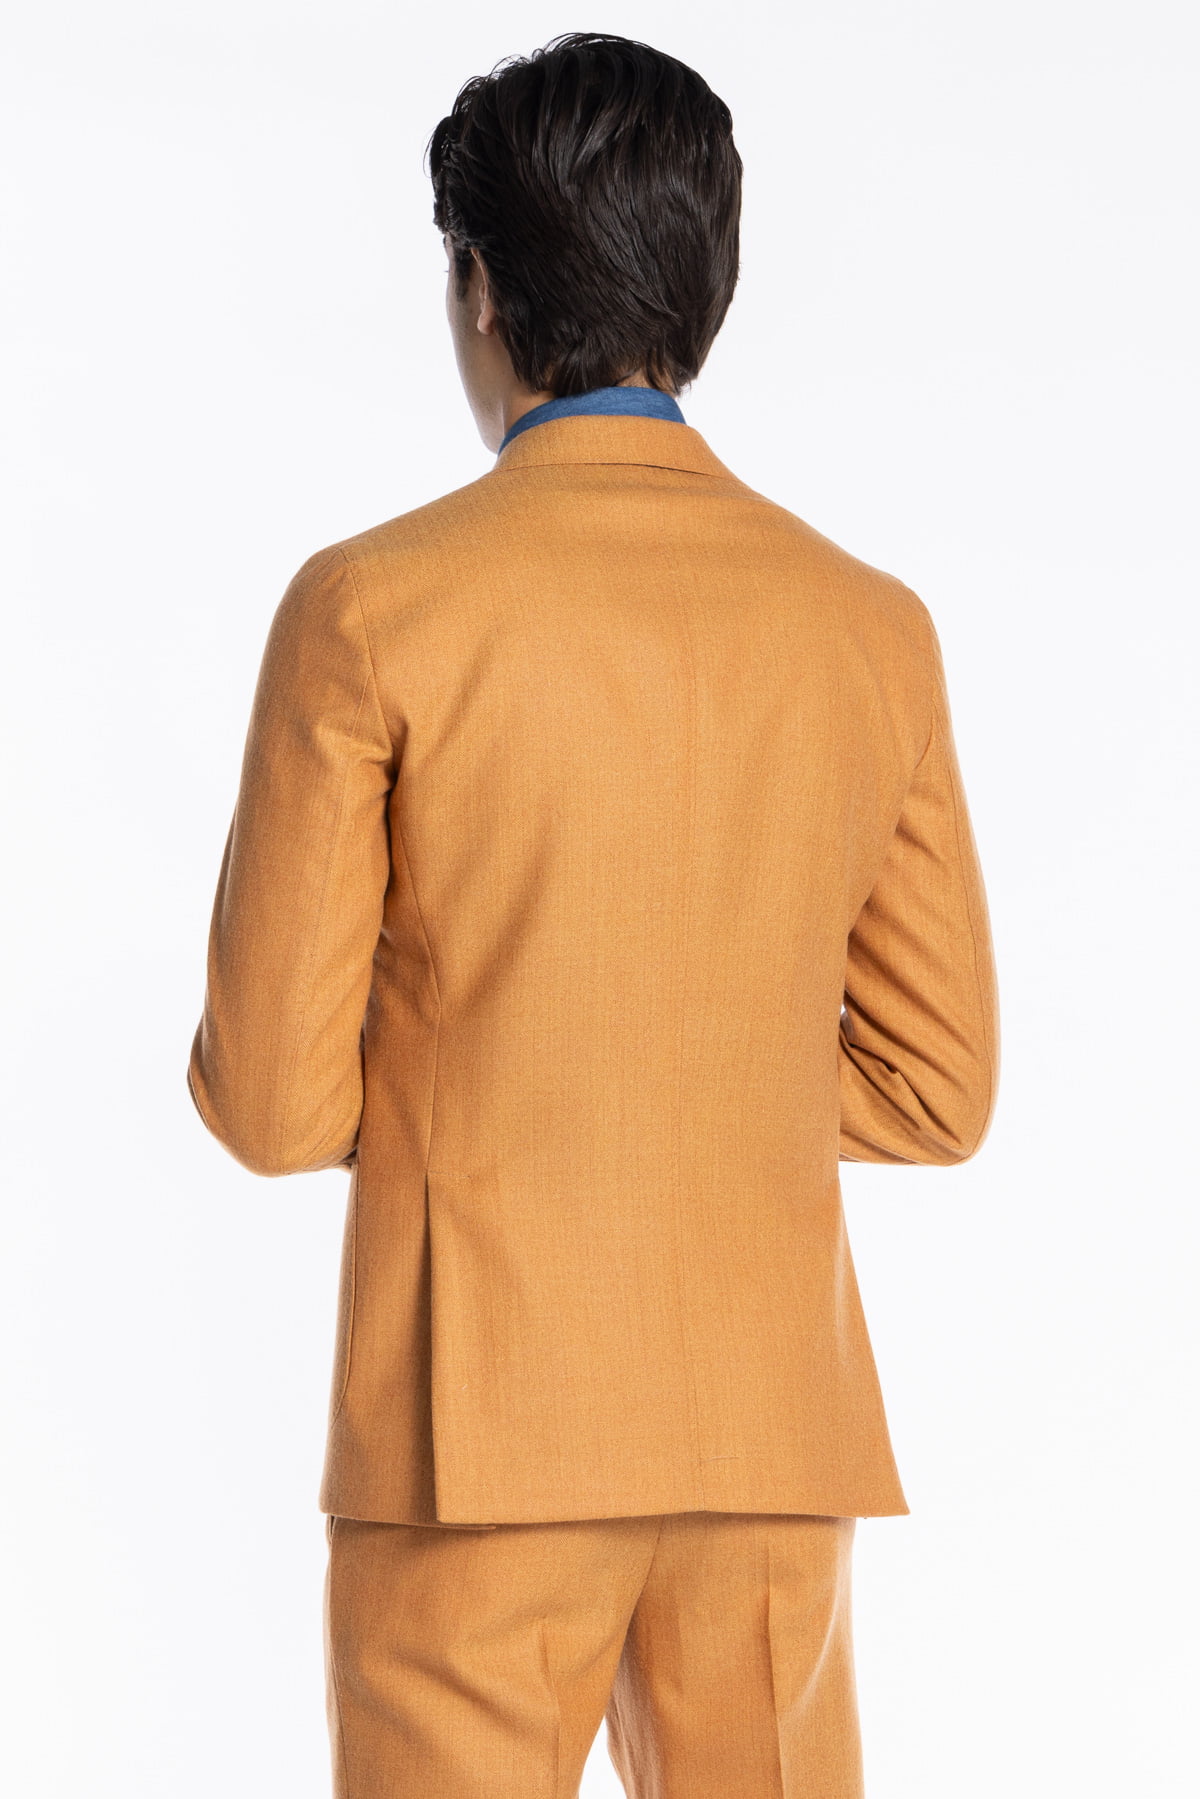 Abito uomo arancio spigato con giacca monopetto in pura lana Rever a lancia e tasche a toppe e pantalone vita alta con fibbie regolabili Holland & Sherry